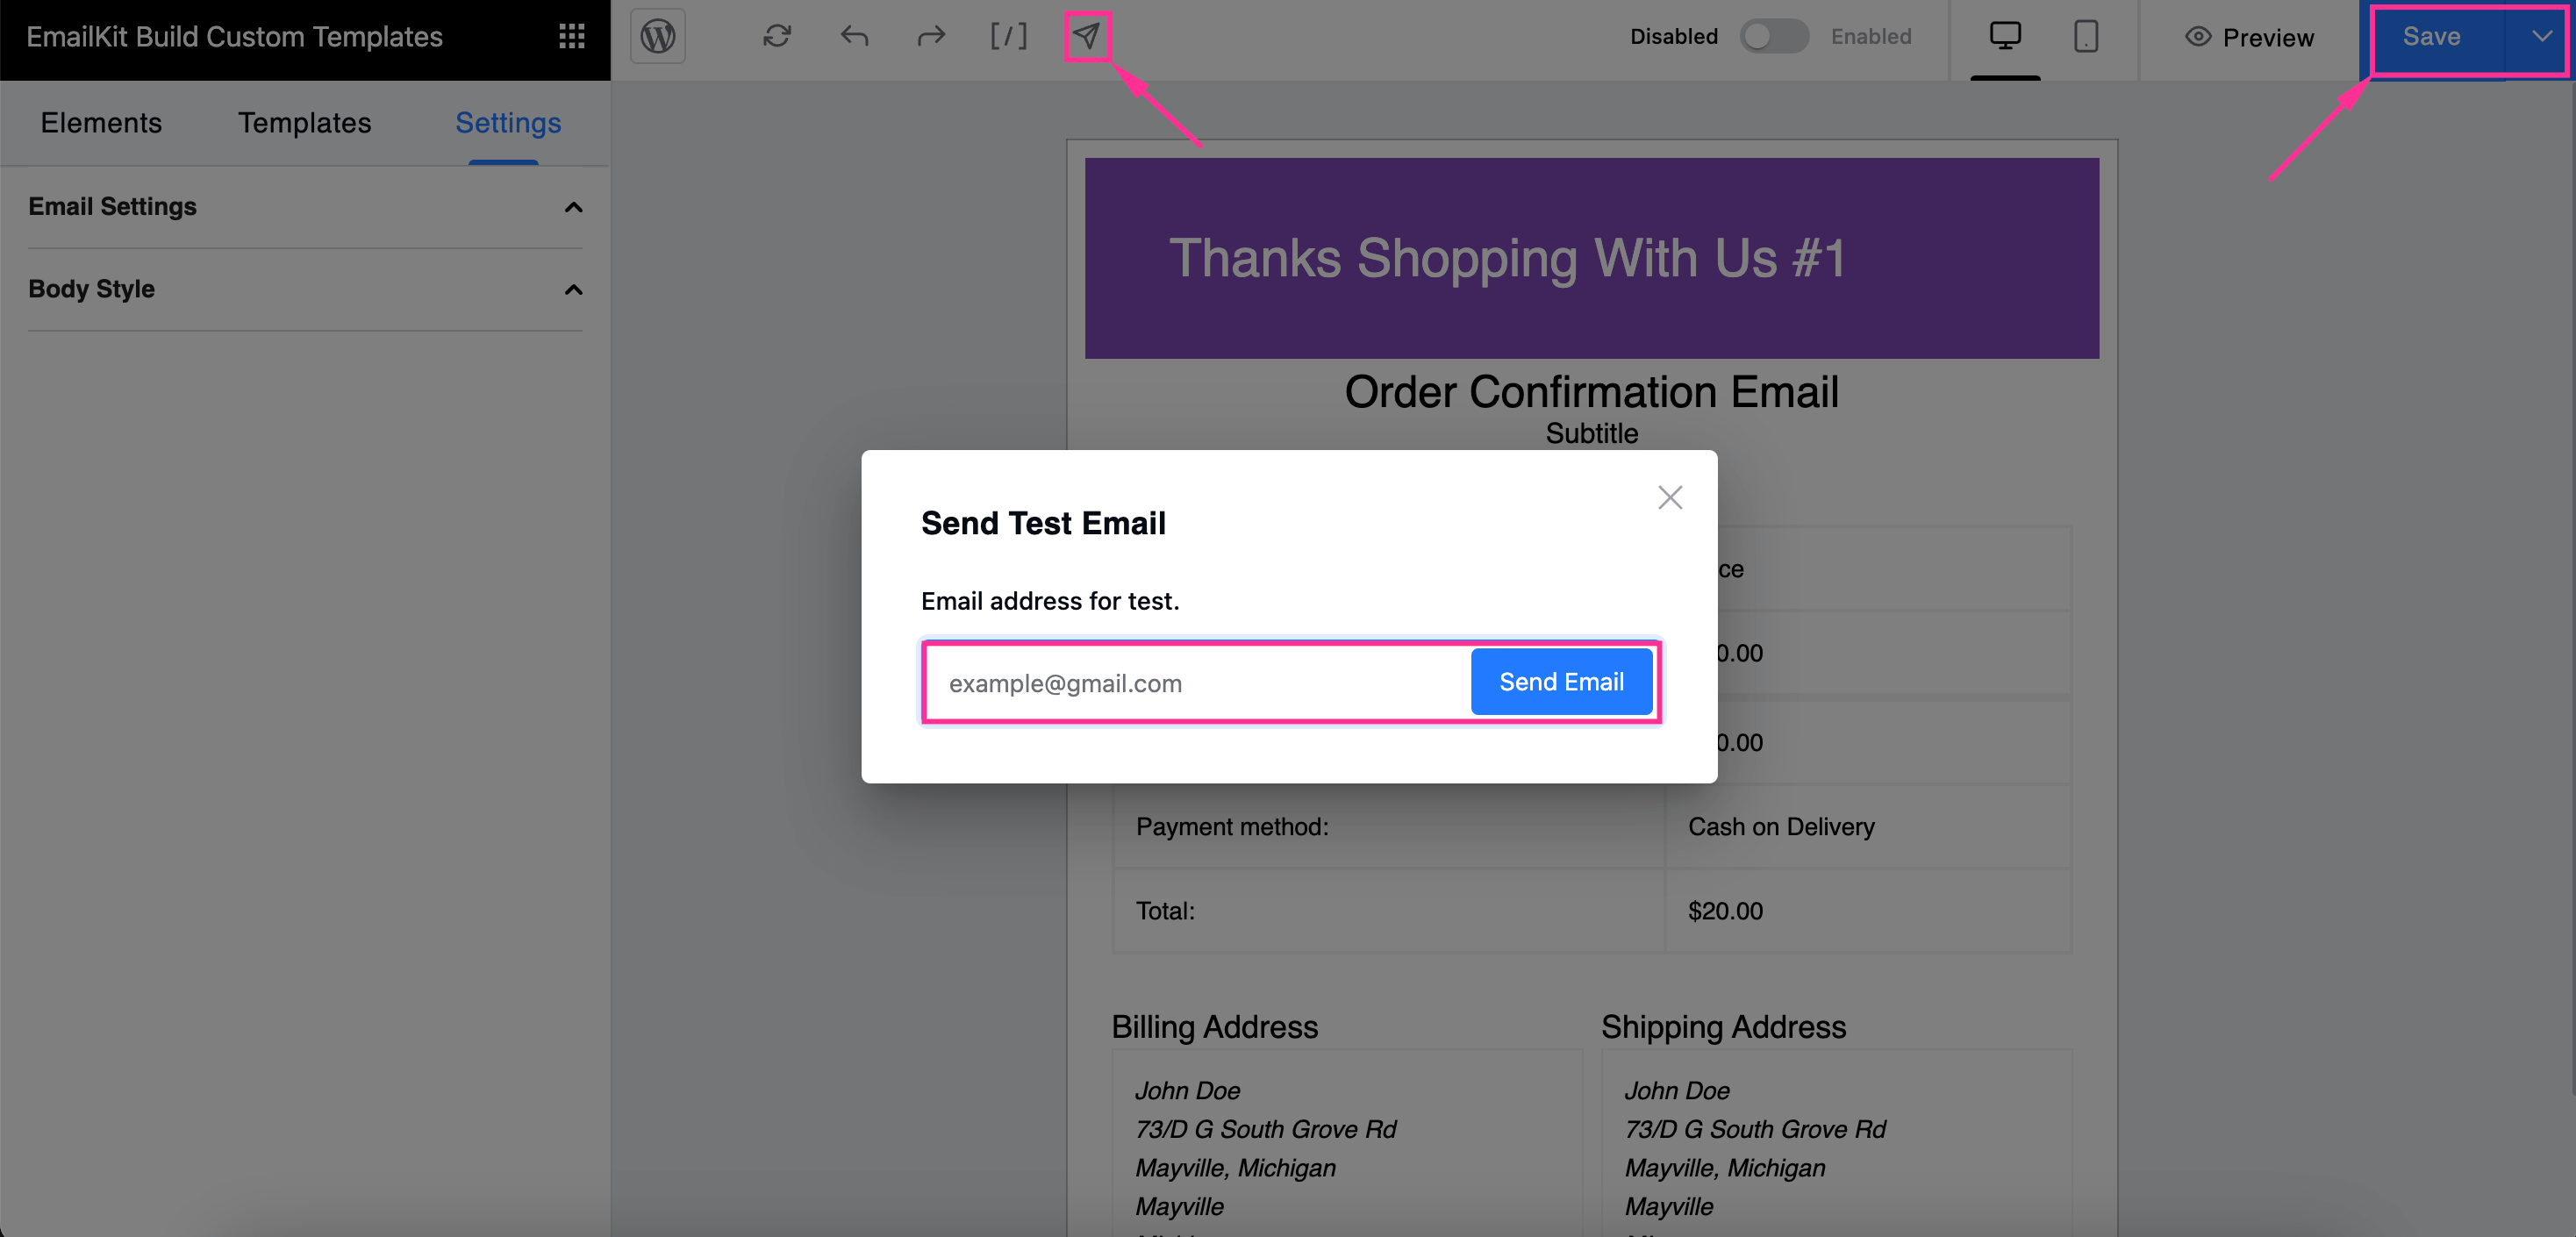 Testez l’email de confirmation de commande avec EmailKit